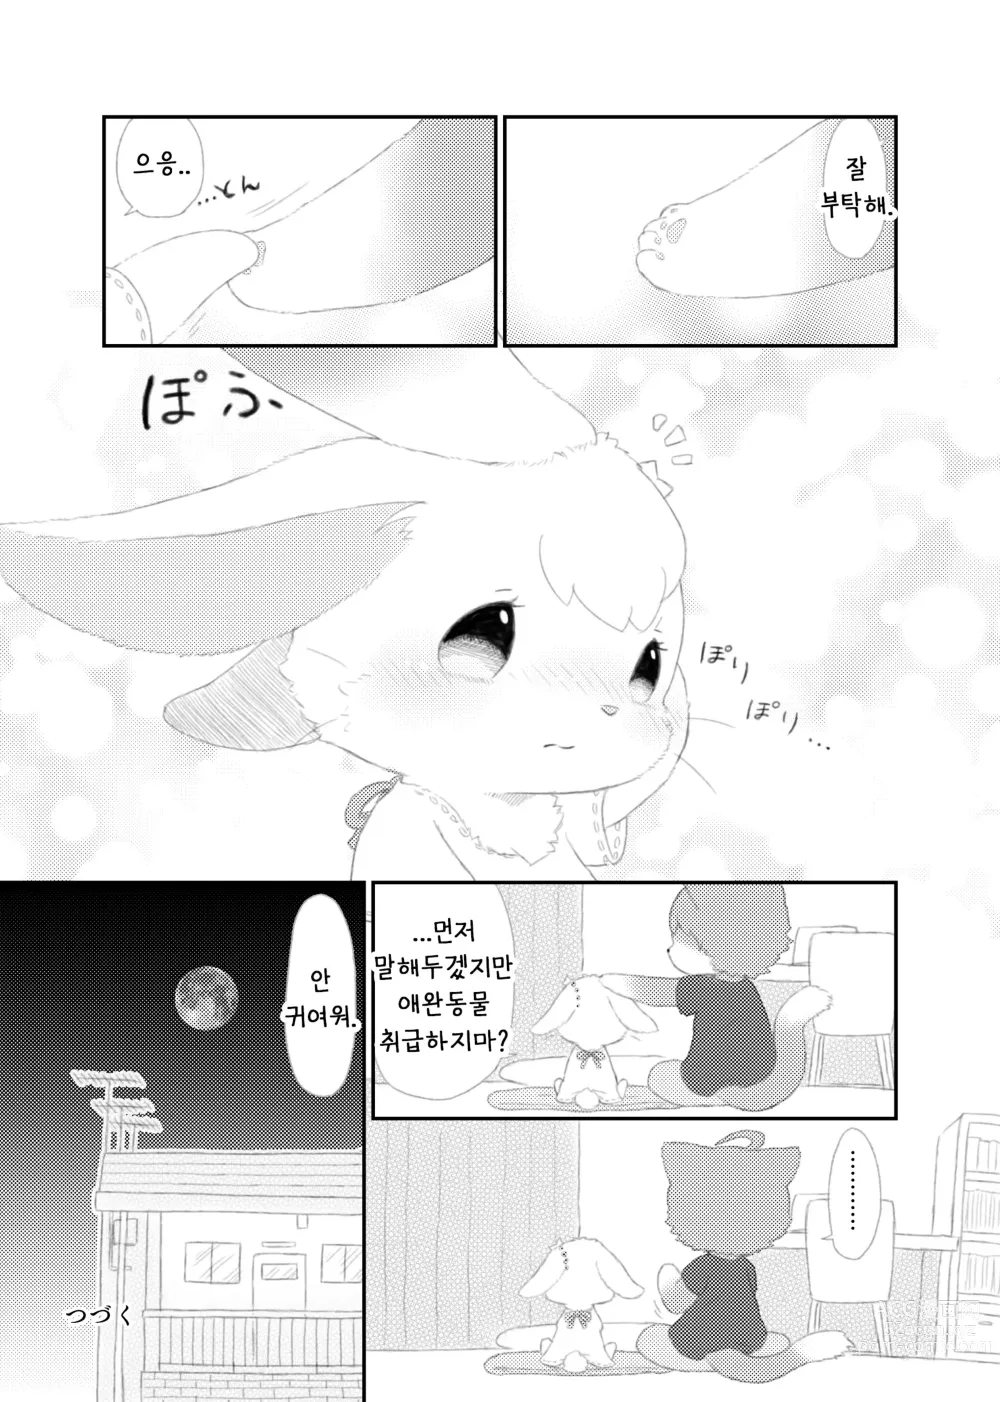 Page 25 of doujinshi 달토끼통신 1화